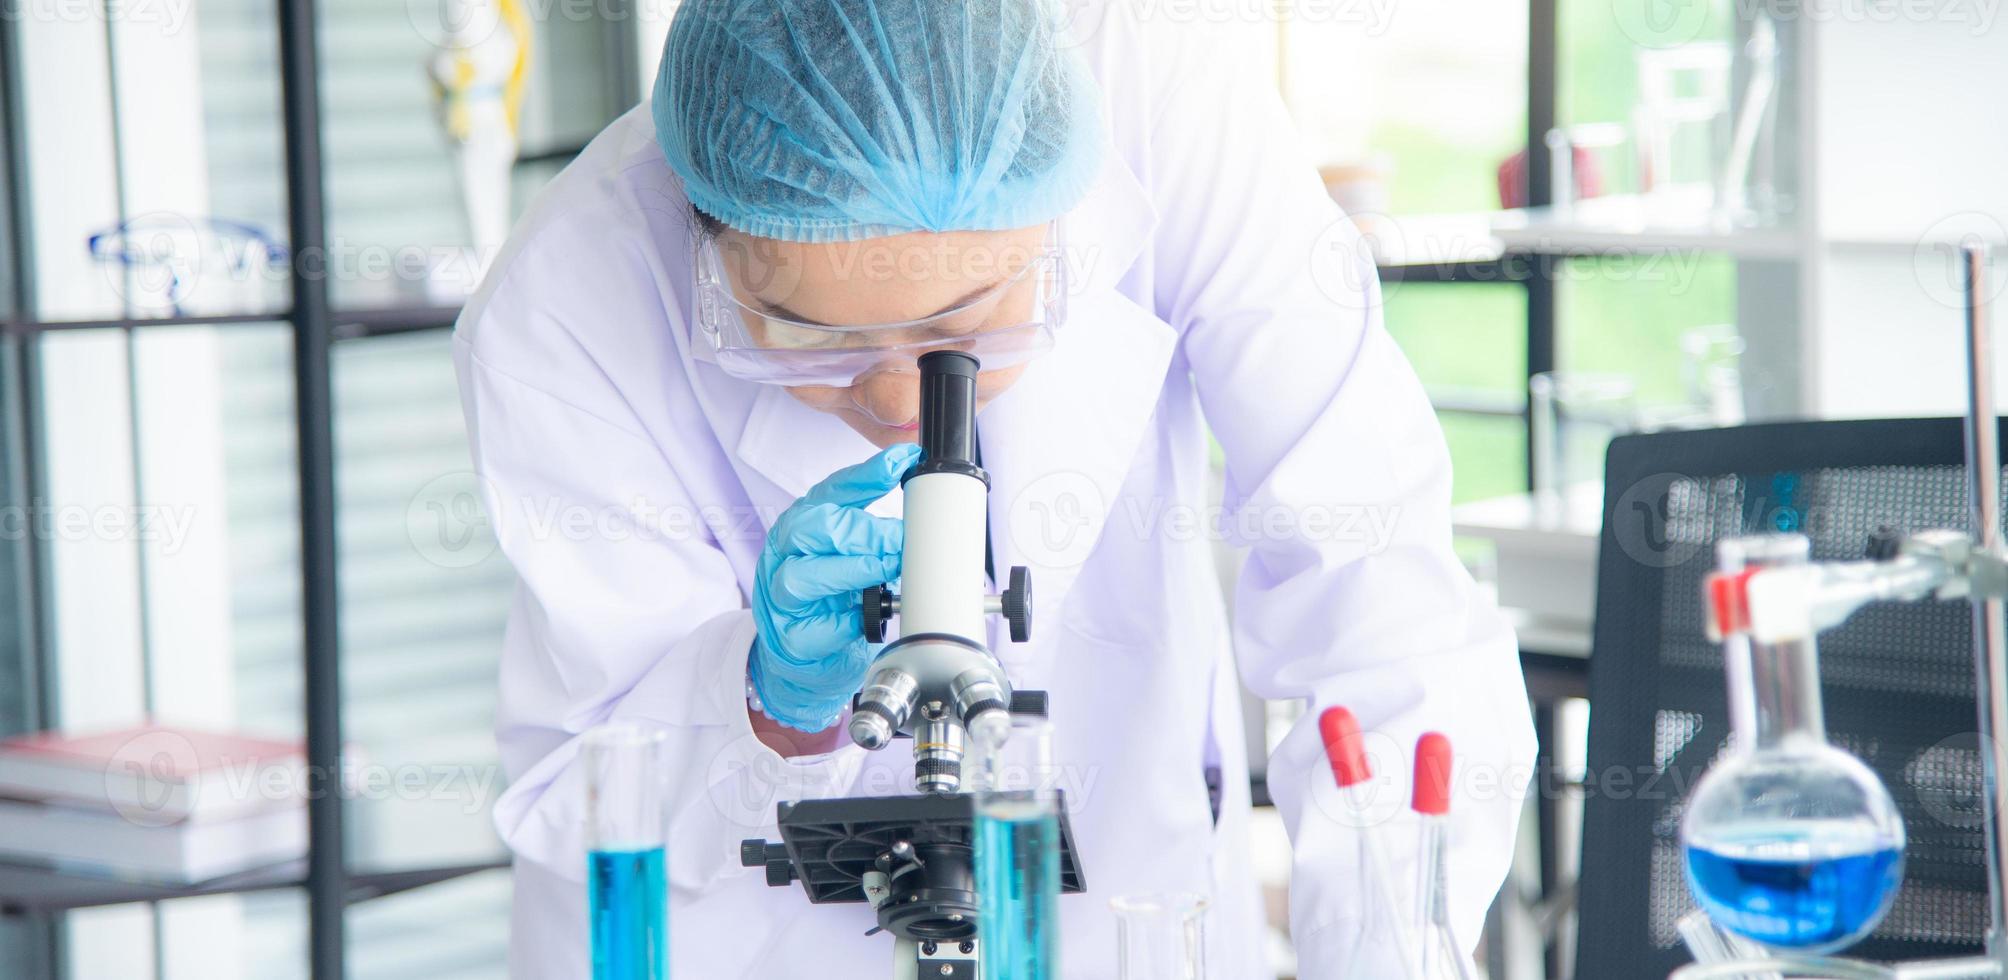 une scientifique, chercheuse, technicienne ou étudiante asiatique a mené des recherches ou des expériences à l'aide d'un microscope qui est un équipement scientifique dans un laboratoire médical, de chimie ou de biologie photo